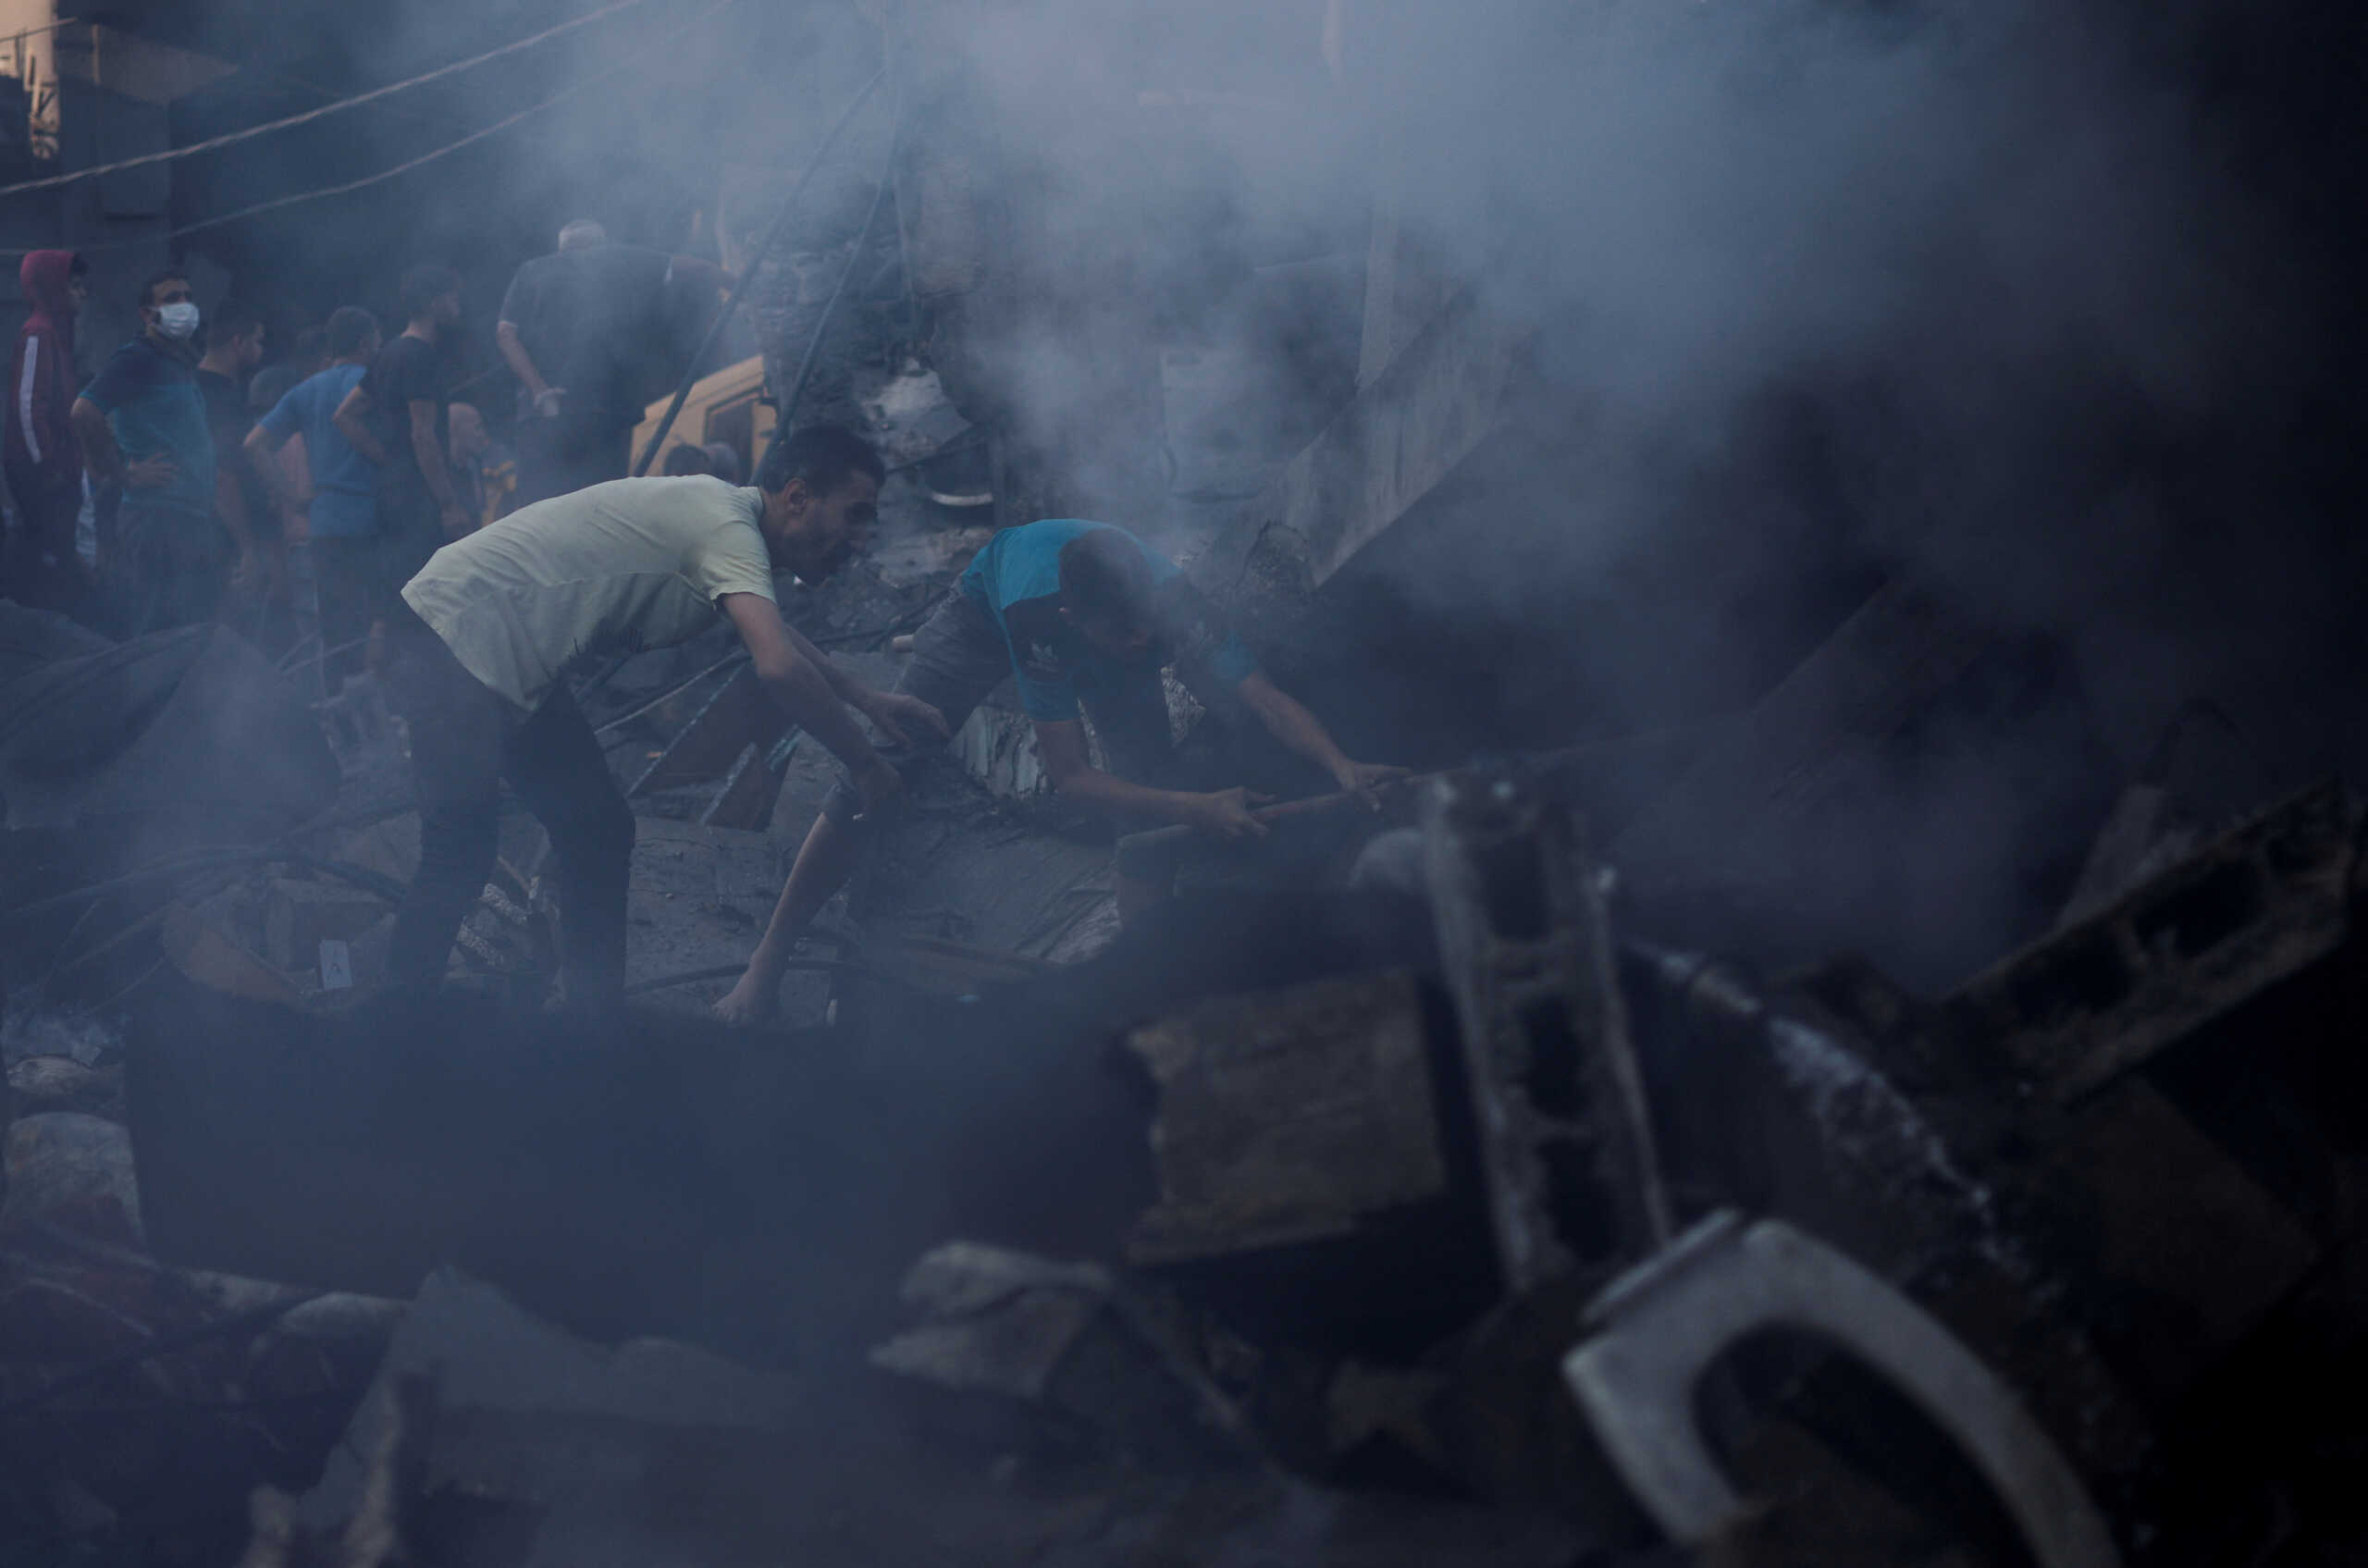 Πόλεμος στο Ισραήλ: Νεκρό πρωτοκλασάτο στέλεχος της Χαμάς στην Γάζα – Εγκαταλείπουν μαζικά την πόλη οι κάτοικοι